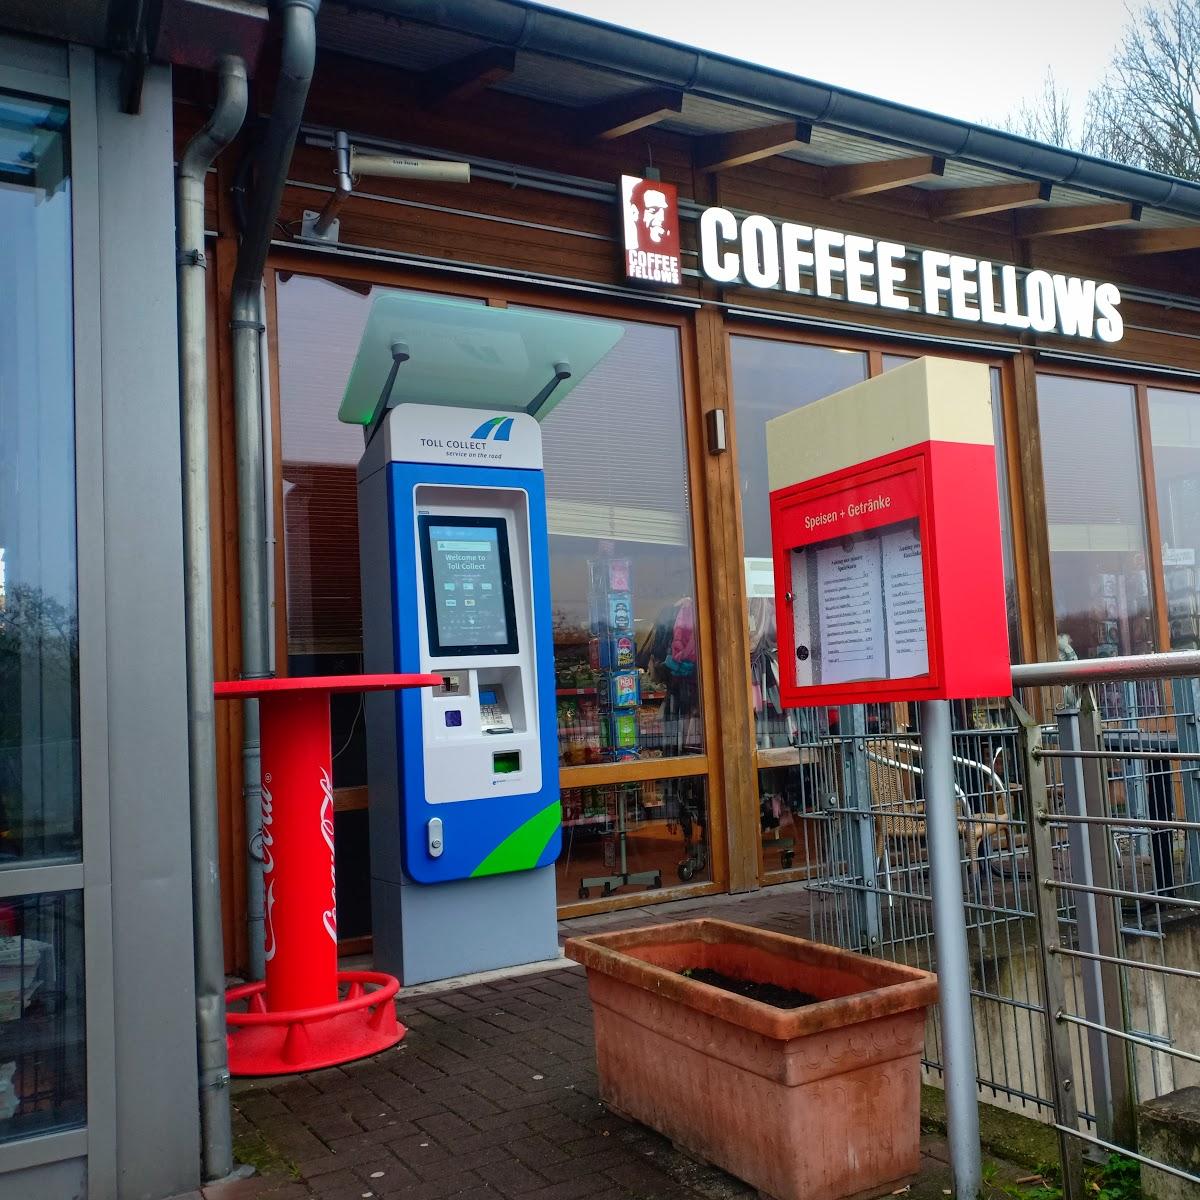 Restaurant "Coffee Fellows - Kaffee, Bagels, Frühstück" in Hünxe